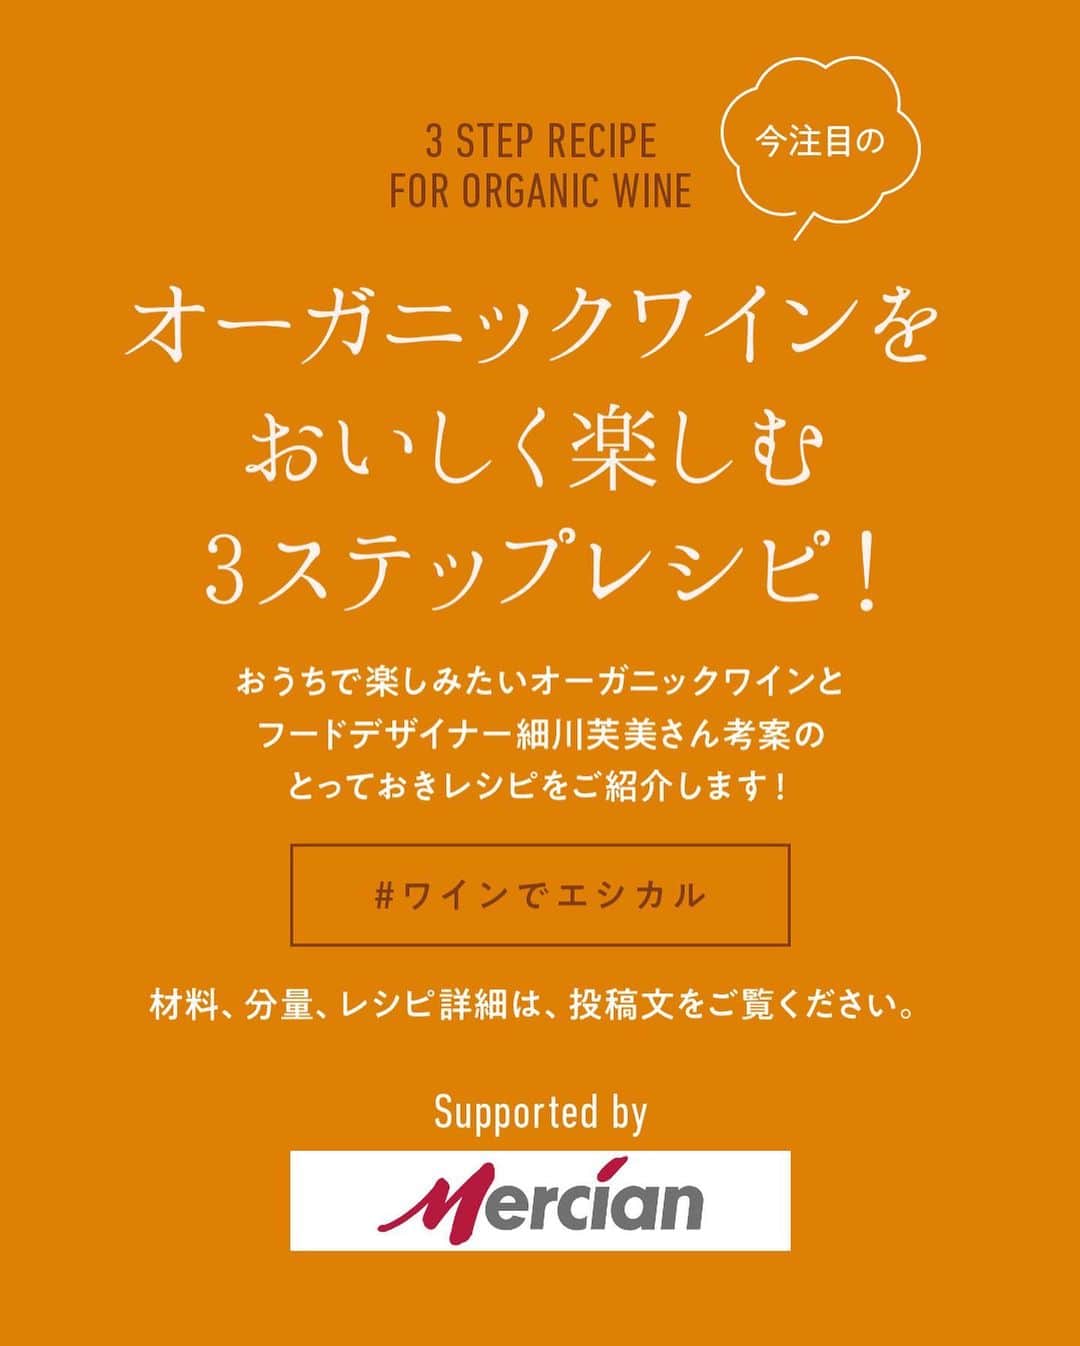 Hanako公式さんのインスタグラム写真 - (Hanako公式Instagram)「話題のオーガニックワインをおいしく楽しむおうちレシピ🍷with メルシャン @mercian_ethicalwine のオーガニックワイン【ビストロオーガニック】編﻿ ﻿ 🍇今回合わせるワインは…﻿ メルシャンのオーガニックワイン「ビストロオーガニック」：気軽に楽しめる、果実味豊かなオーガニックワイン。無農薬の有機栽培ぶどうを100%使用！国内で丁寧に造られたワインで、日本人に合う、心地よい飲み口の本格的な味わいです。﻿ ﻿ __________________________﻿ ﻿ 🦀「小かぶとカニカマのペペロンチーノ」﻿ →ワインは…「ビストロオーガニック 白」マスカットやさわやかな柑橘の香りが感じられ、口当りは柔らかく、優しい甘味とすっきりとした心地よい味わい。﻿ ﻿ 材料﻿ ・小かぶ：2個（85g前後）﻿ ・ニンニク：1片﻿ ・赤唐辛子：1本﻿ ・カニカマ：5本（60g）﻿ ・オリーブオイル：大さじ1﻿ ・塩：少々﻿ ・粗挽き黒胡椒：少々﻿ ﻿ レシピ詳細﻿ 1.小かぶは4等分の櫛形に切る。ニンニクは薄切りにする。カニカマは手で縦に細長く裂いておく。﻿ 2.小かぶを耐熱容器に入れ、ラップをして600Wの電子レンジで2分加熱する。﻿ 3.鍋にオリーブオイル、ニンニク、赤唐辛子を入れ、弱火にかける。香りが立ったら小かぶを加え、中火で少し焼き色をつける。﻿ 4.最後にカニカマを入れて混ぜ合わせ、塩胡椒をふる。﻿ ﻿ ﻿ ﻿ 🥩「牛ステーキの揚げごぼうと紅生姜添え」﻿ →ワインは…「ビストロオーガニック 赤」黒胡椒のようなスパイシーな香りとぶどうの甘い香りが感じられ、果実味のある穏やかなタンニン、柔らかく心地よい味わい。﻿ ﻿ 材料﻿ ・牛ステーキ肉：1枚分（150g前後）﻿ ・ごぼう：40g﻿ ・紅生姜（スライス）：20g﻿ ・塩：少々﻿ ・粗挽き胡椒：少々﻿ ・オリーブオイル：大さじ1/2﻿ ・ニンニク：1/2片﻿ ・揚げ油：適量﻿ ﻿ レシピ詳細﻿ 1.肉は冷蔵庫から取り出し、5〜10分ほど常温に置いておく。﻿ 2.ごぼうはピーラーでスライスし、水にさらしておく。ニンニクに包丁を寝かせて置き、体重をかけ潰てす。﻿ 3.ごぼうの水気をよく切り、素揚げする。﻿ 4.フライパンにオリーブオイル、ニンニクを入れ強火にかける。﻿ 5.肉を入れ、片面を30秒、裏返して裏面を15秒ほど焼く。肉を取り出し、アルミホイルに5分ほど包んで休ませたのち、強火で熱したフライパンに再び入れる。﻿ 6.紅生姜に塩をふり、水気を絞ってごぼうとさっくり混ぜる。﻿ 7.皿に盛り付け、仕上げに粗挽き黒胡椒をふって完成。﻿ ﻿ __________________________﻿ ﻿ オーガニックワインで気軽に始めよう。わたしにイイこと、みんなにイイこと。みなさまのオーガニックワインの楽しみ方を #ワインでエシカル でぜひ教えてください。﻿ ﻿ レシピを考案したのは…﻿ 細川 芙美 / フードデザイナー。ロケ弁ブランドをはじめ、レシピ提供やメニューのプロデュースも手がける。著書『#ひとりじめ飯』（光文社）が発売中。@humihosokawa﻿ ﻿ #Hanako #Hanako_magazine #私らしいエシカル #ワインでエシカル #メルシャン #mercian #ワイン #オーガニック #オーガニックワイン #自然派 #エシカルな暮らし #サスティナブル #ビストロ #ビストロオーガニック #PR #ワインのつまみ #ワインのある暮らし #エシカルワイン #ナチュラルワイン #簡単レシピ #おうちごはん #おうち時間﻿」10月10日 19時00分 - hanako_magazine